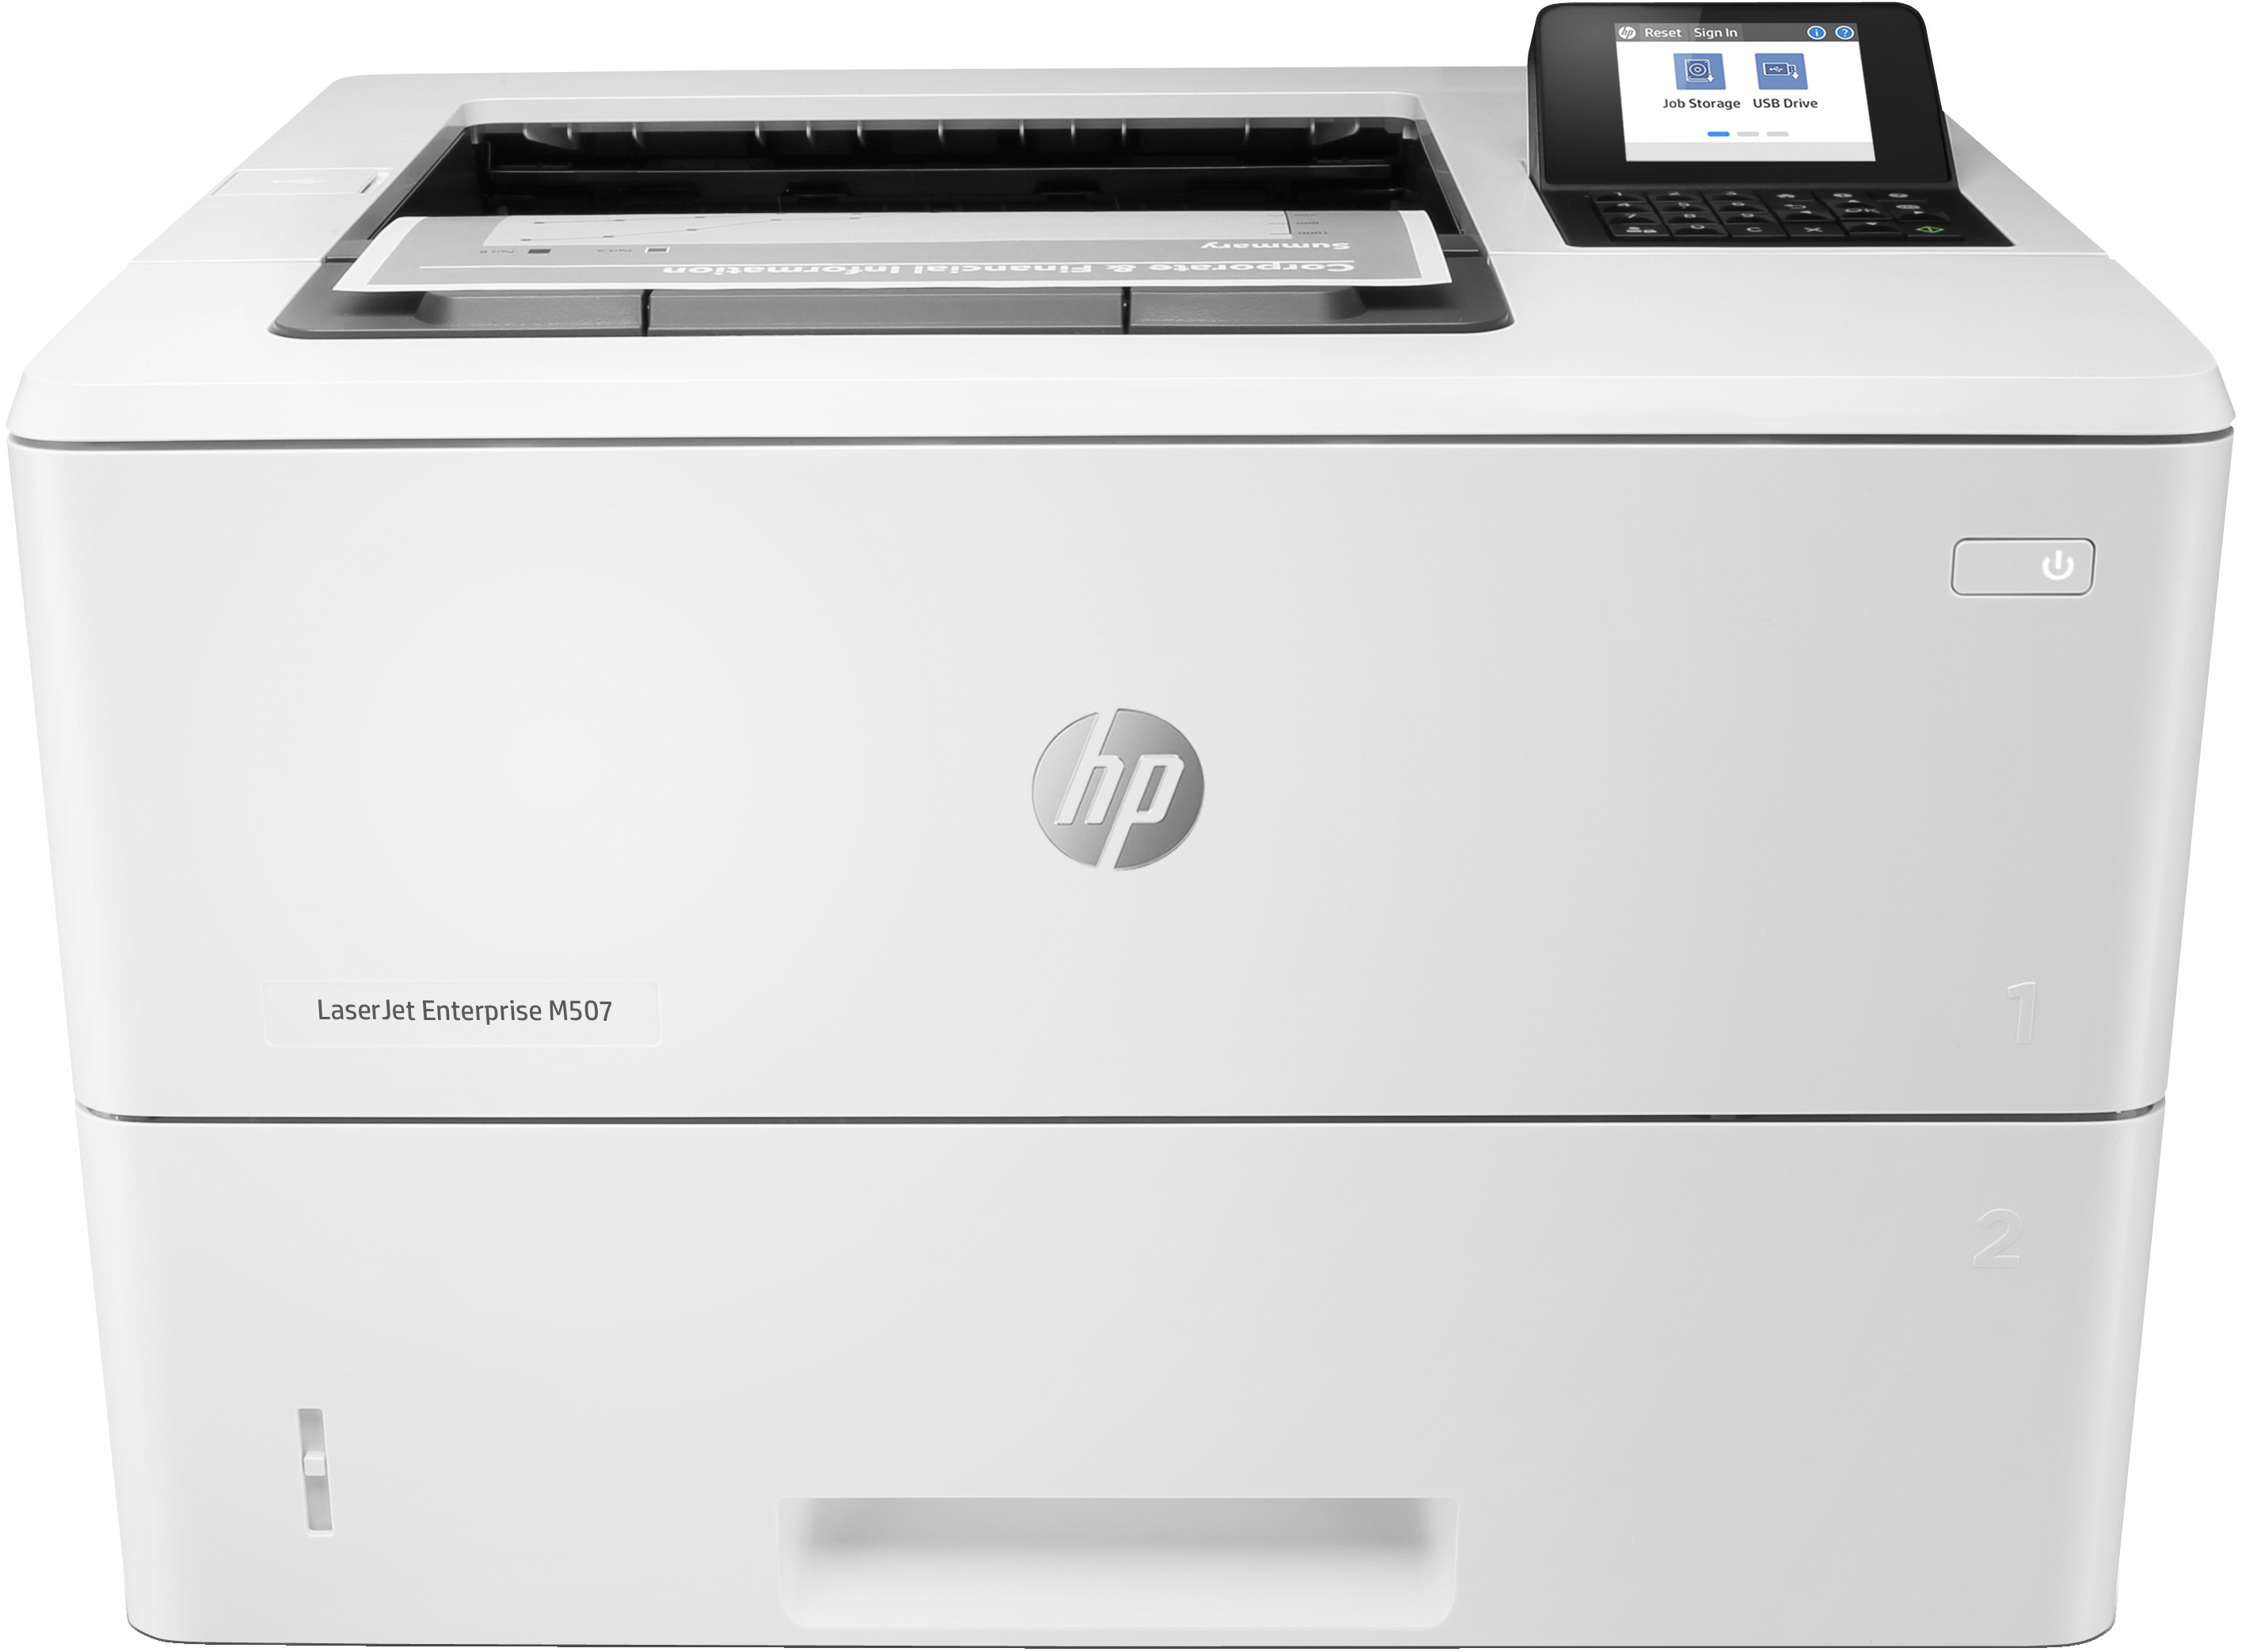 HP HP LaserJet Enterprise M507dn, Black and white, Printer voor Print, Dubbelzijdig afdrukken